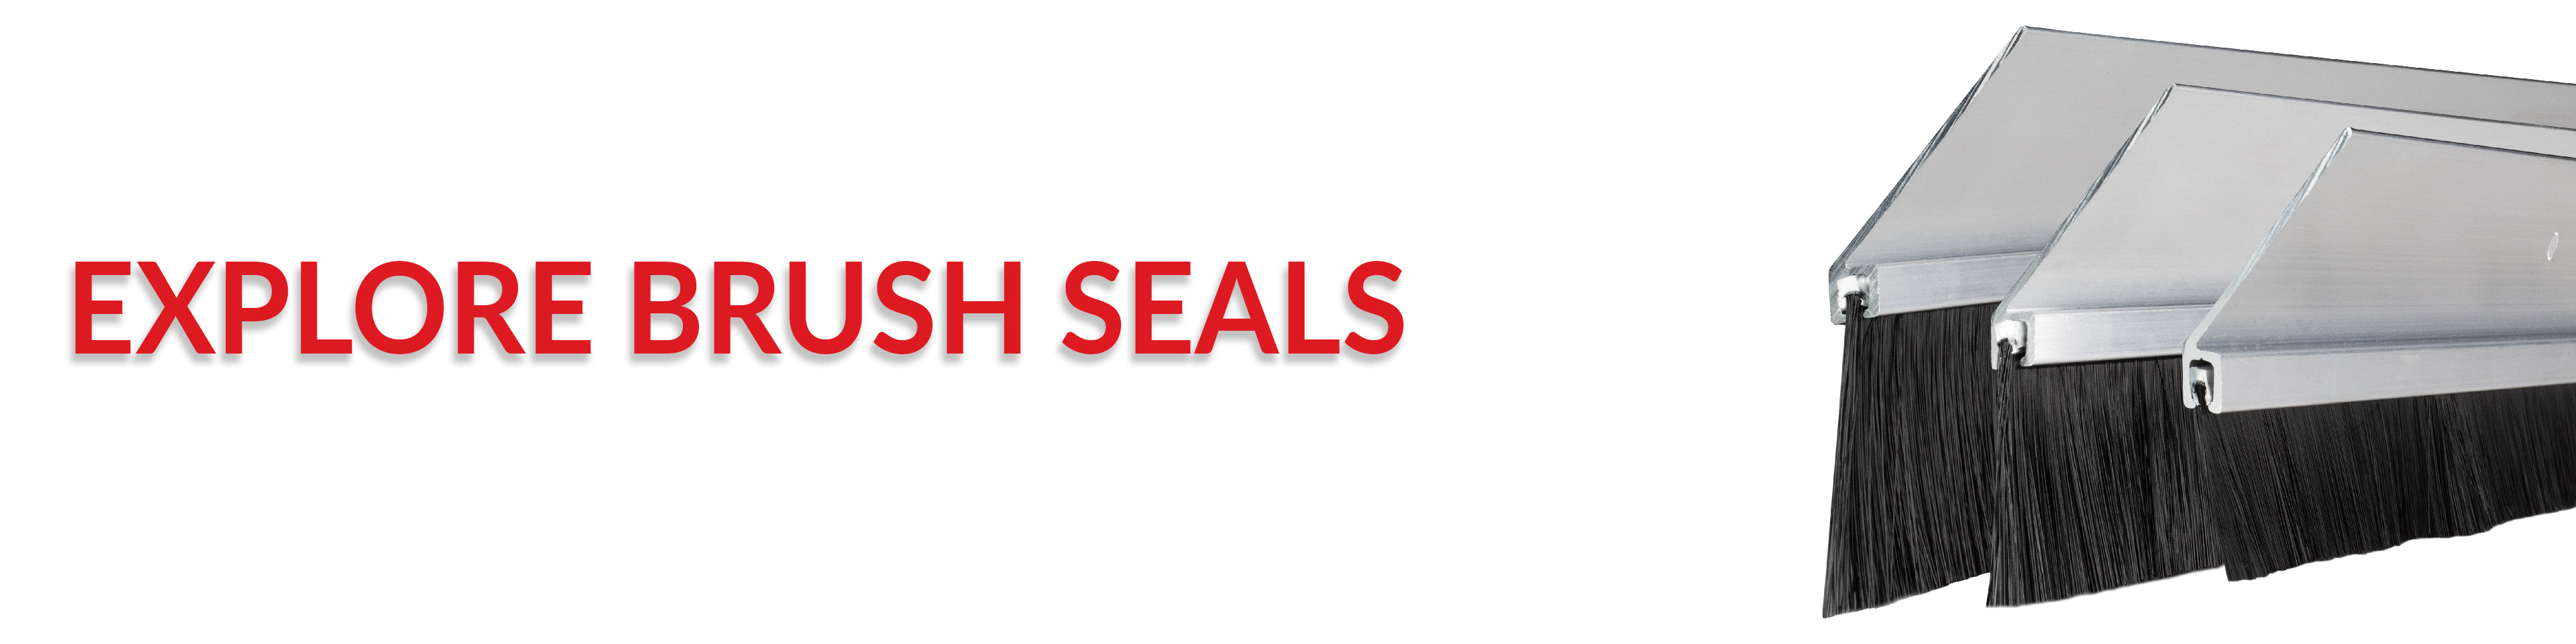 Explore Brush Seals